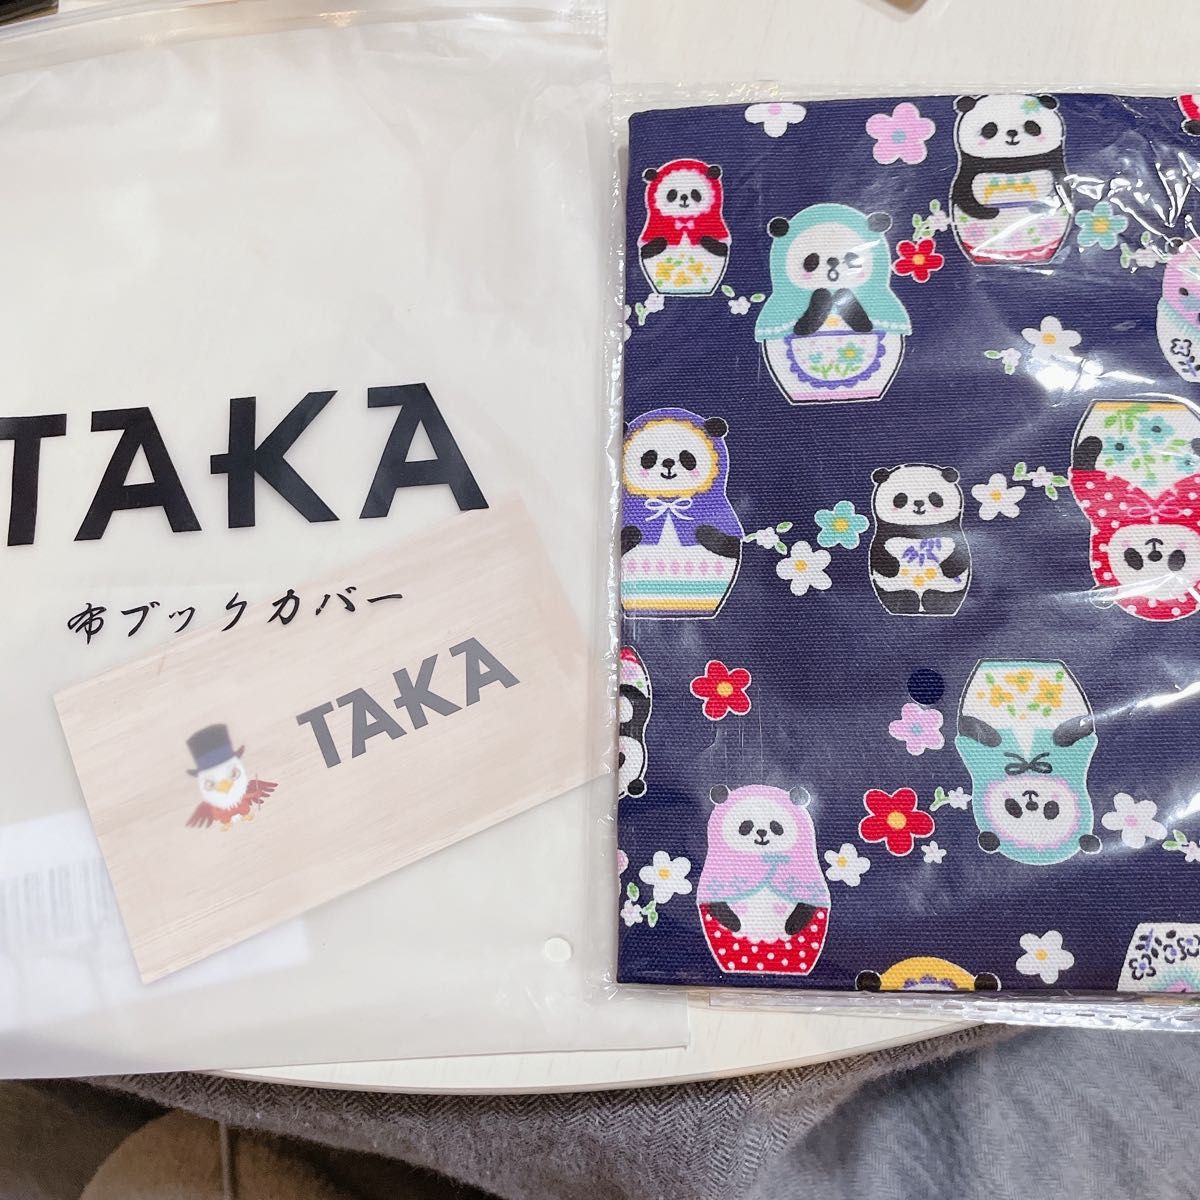 【新品未使用】TAKA ブックカバー 文庫 おしゃれ 文庫本カバー 布製 綿麻